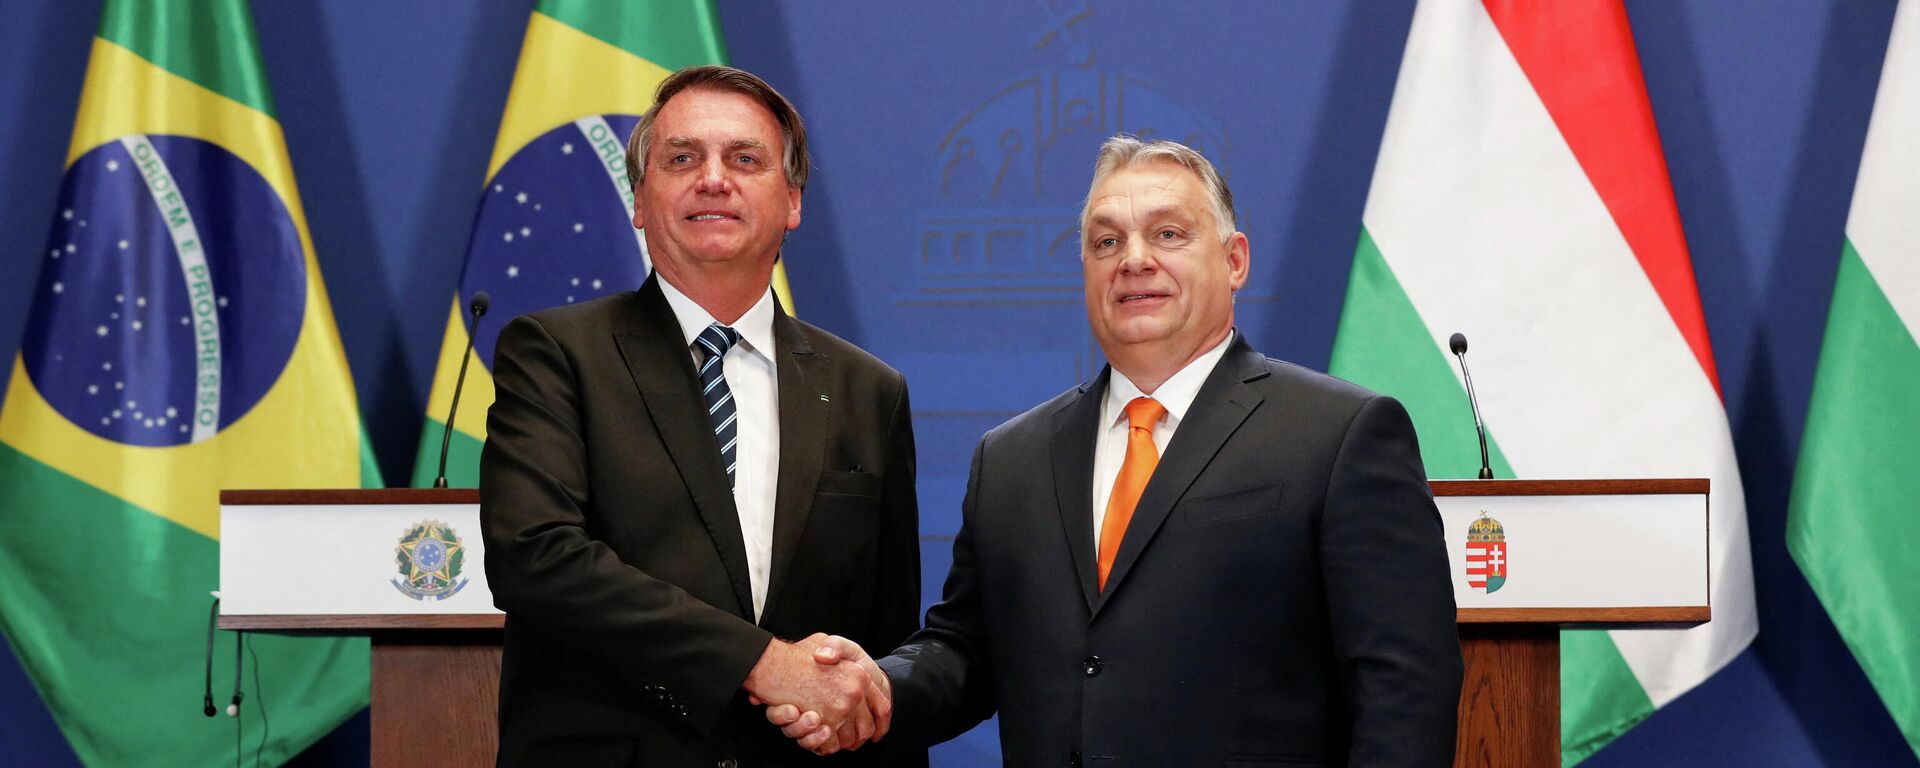 O primeiro-ministro húngaro Viktor Orbán e o presidente brasileiro Jair Bolsonaro fazem uma declaração conjunta, em Budapeste, Hungria, 17 de fevereiro de 2022 - Sputnik Brasil, 1920, 17.02.2022